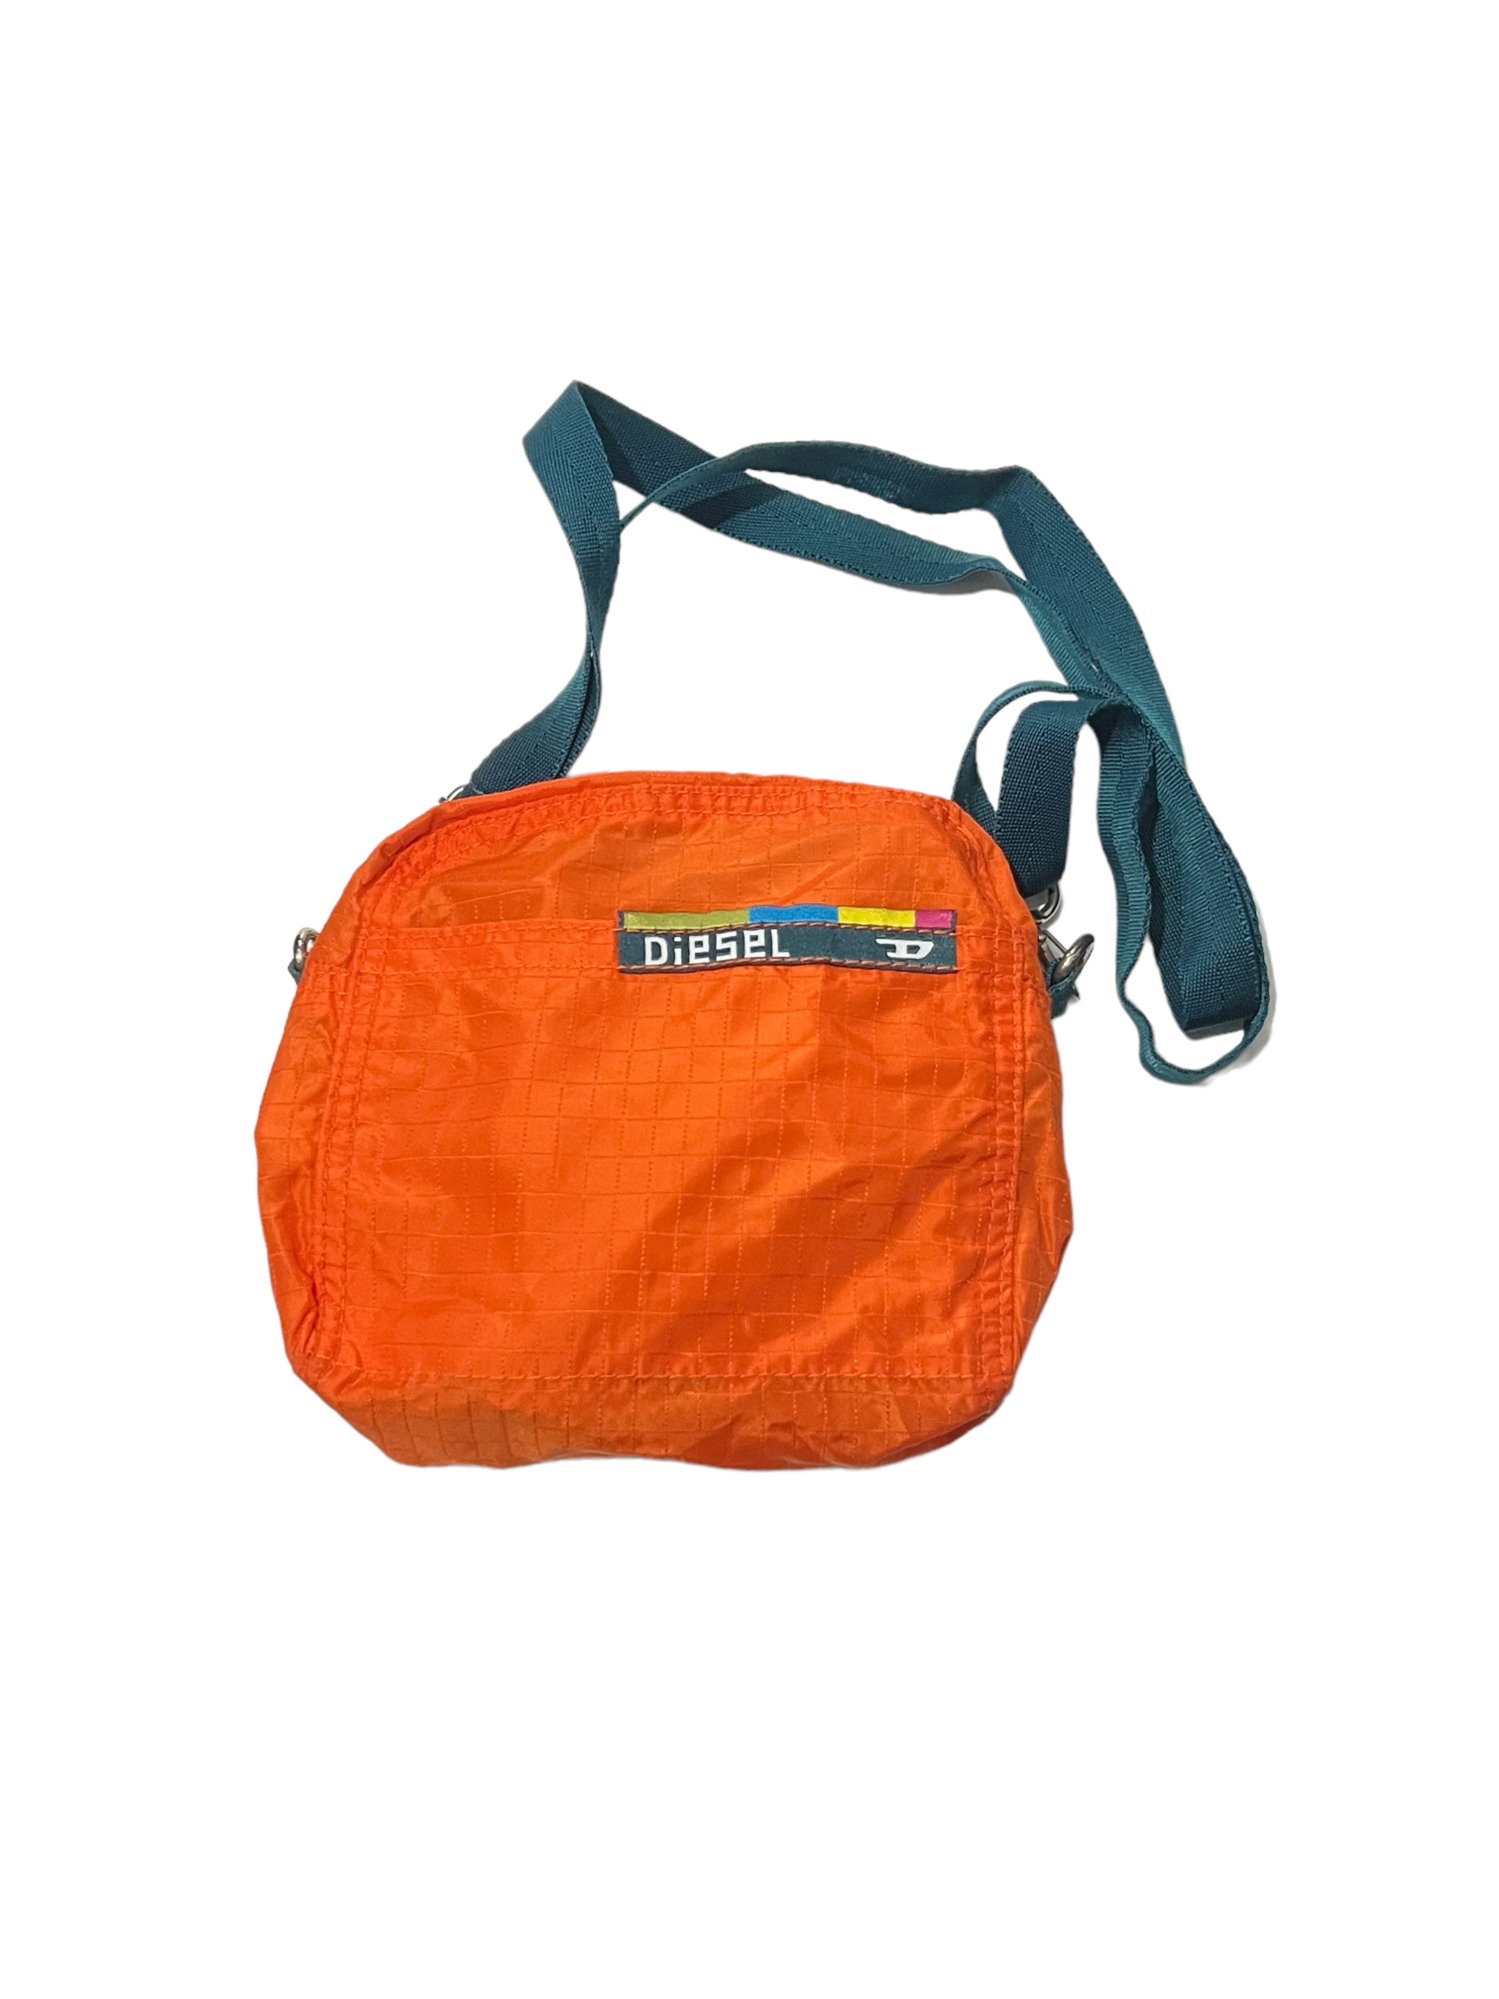 DIESEL Sporty Cross Bag (Orange)